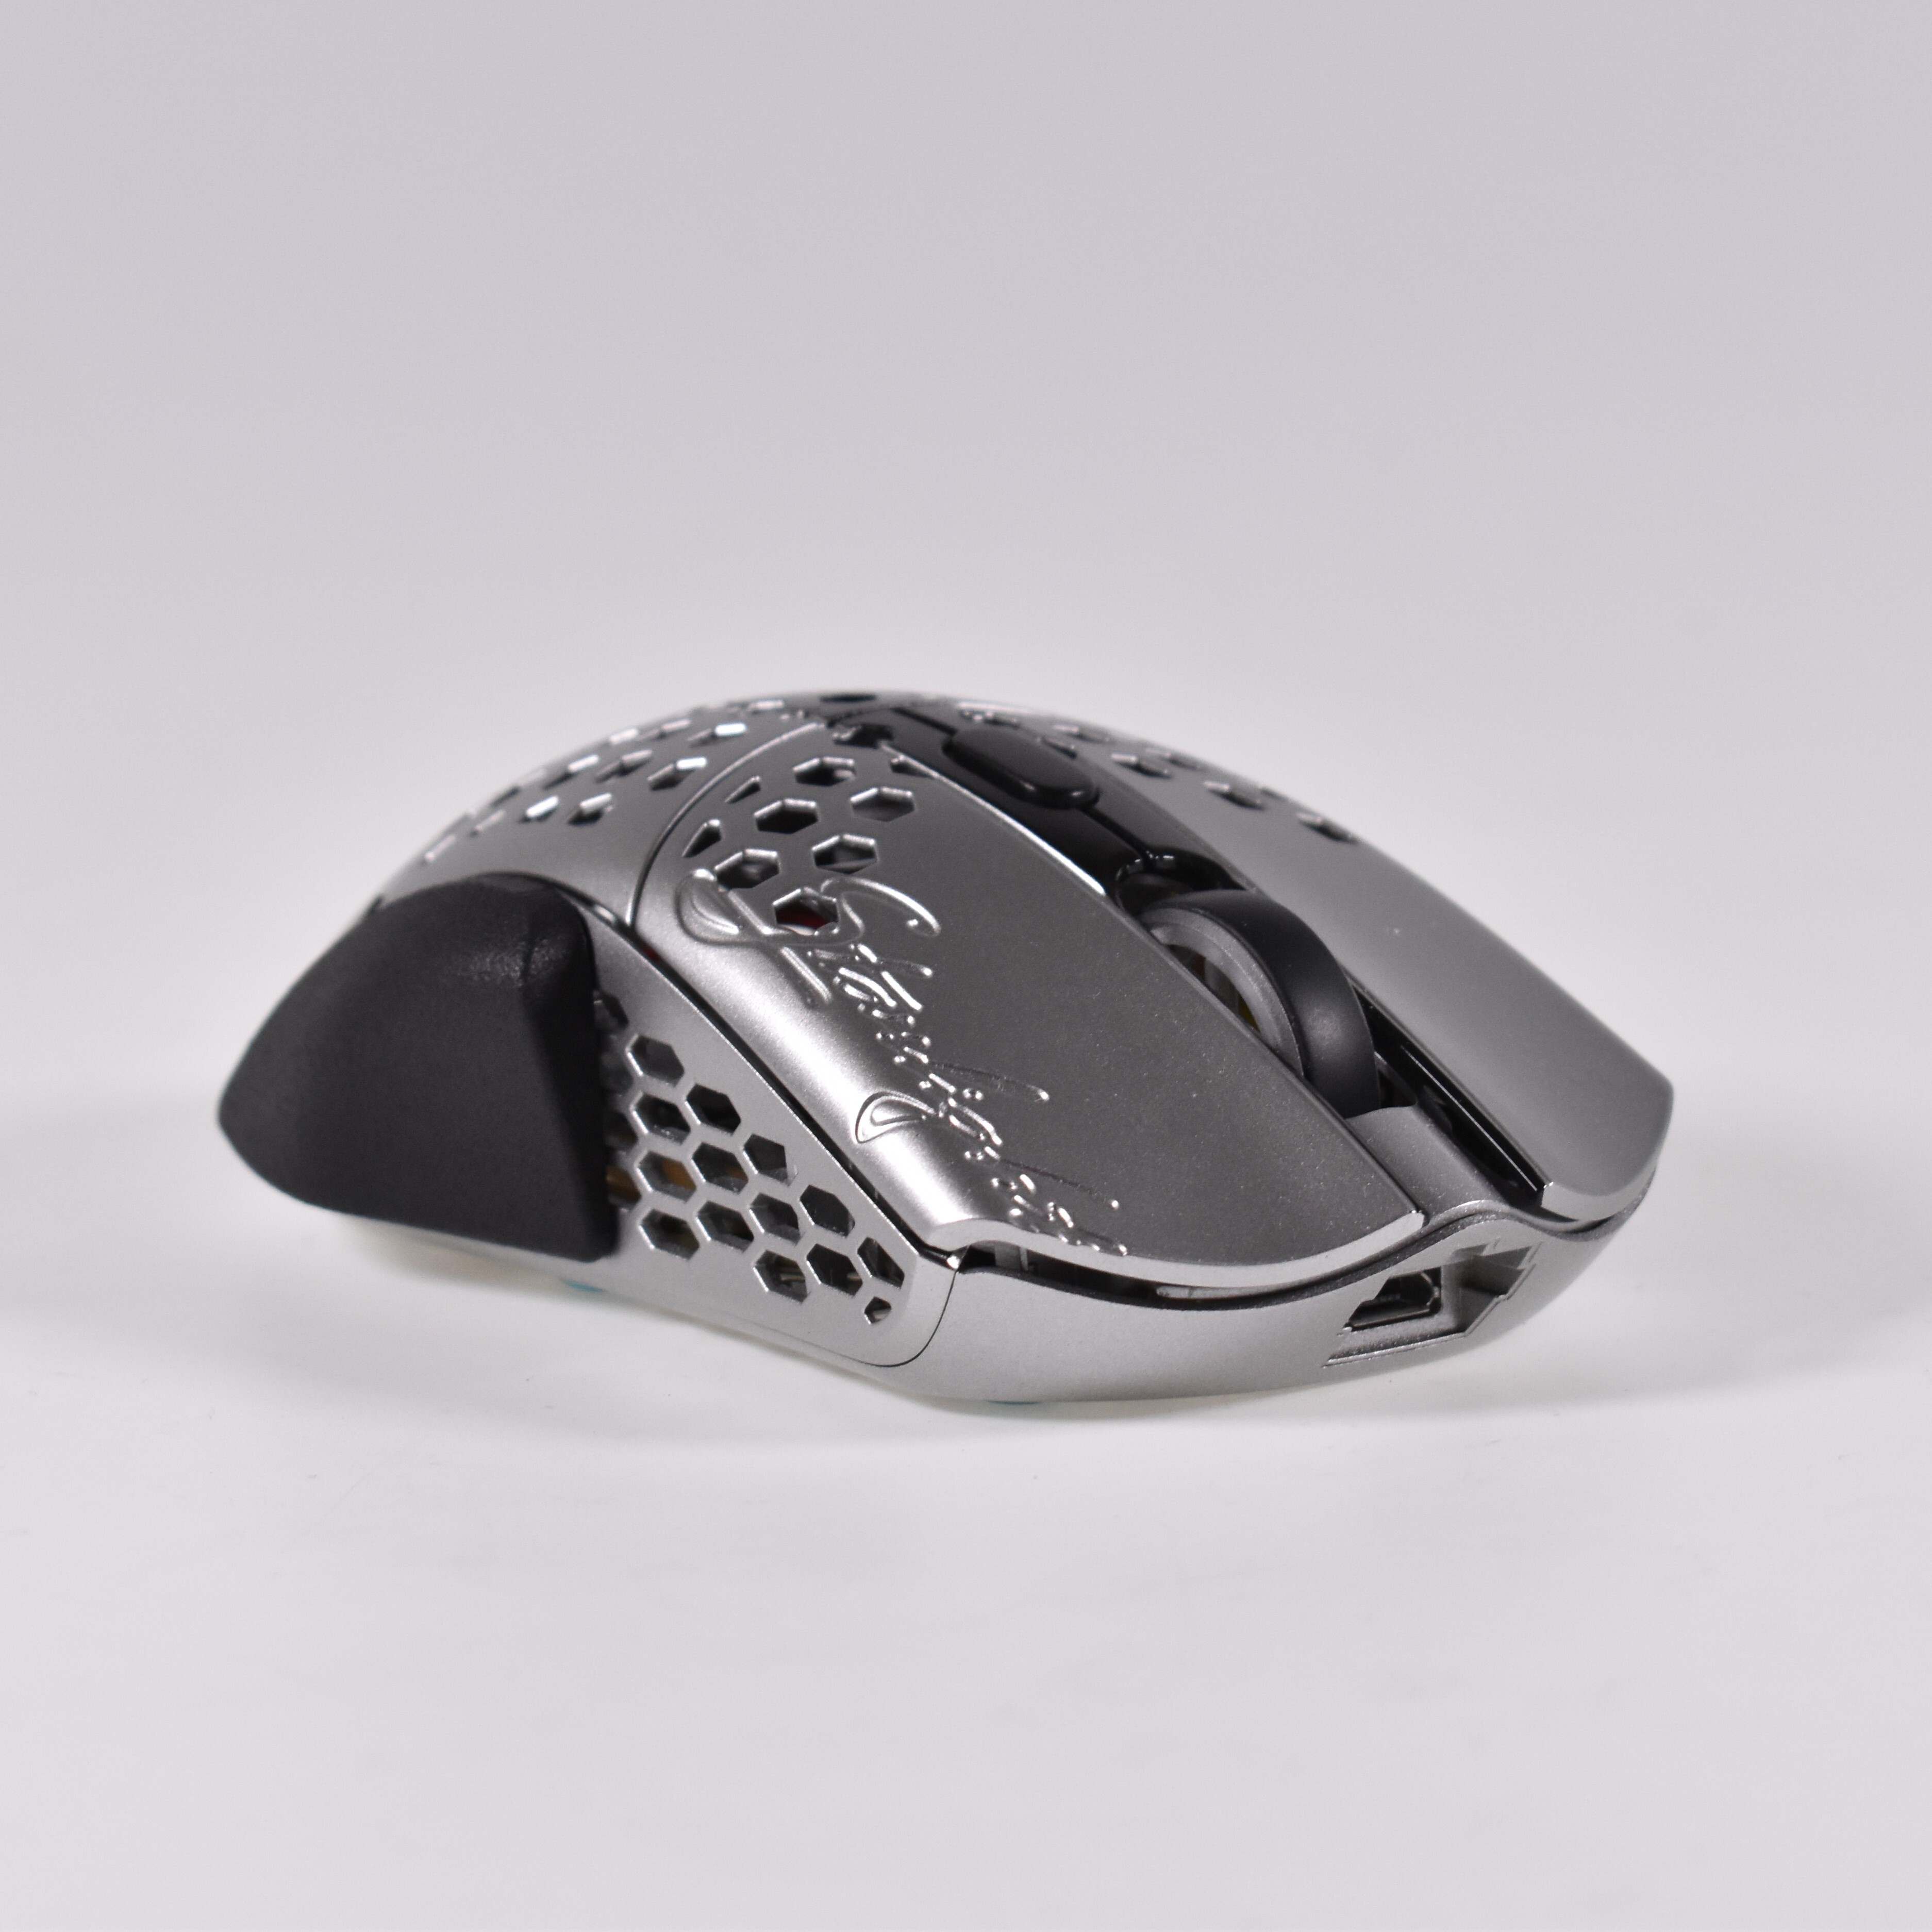 【新製品】マウスに取り付けて形状を大幅に変化させる
nTech Fit for Finalmouse S sizeシリーズを販売開始